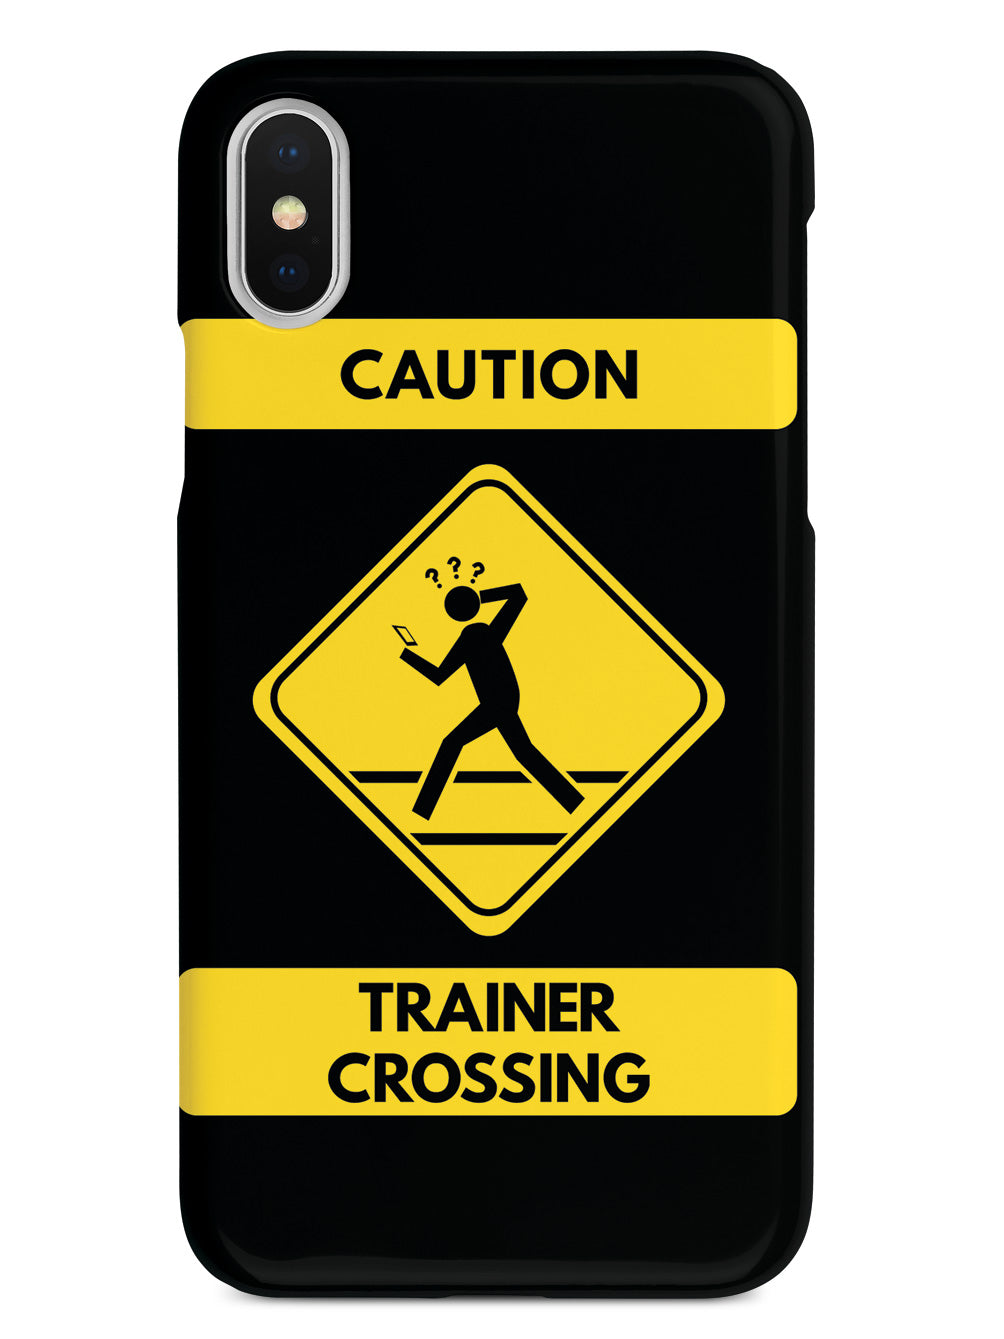 Caution Trainer Crossing - Black Case